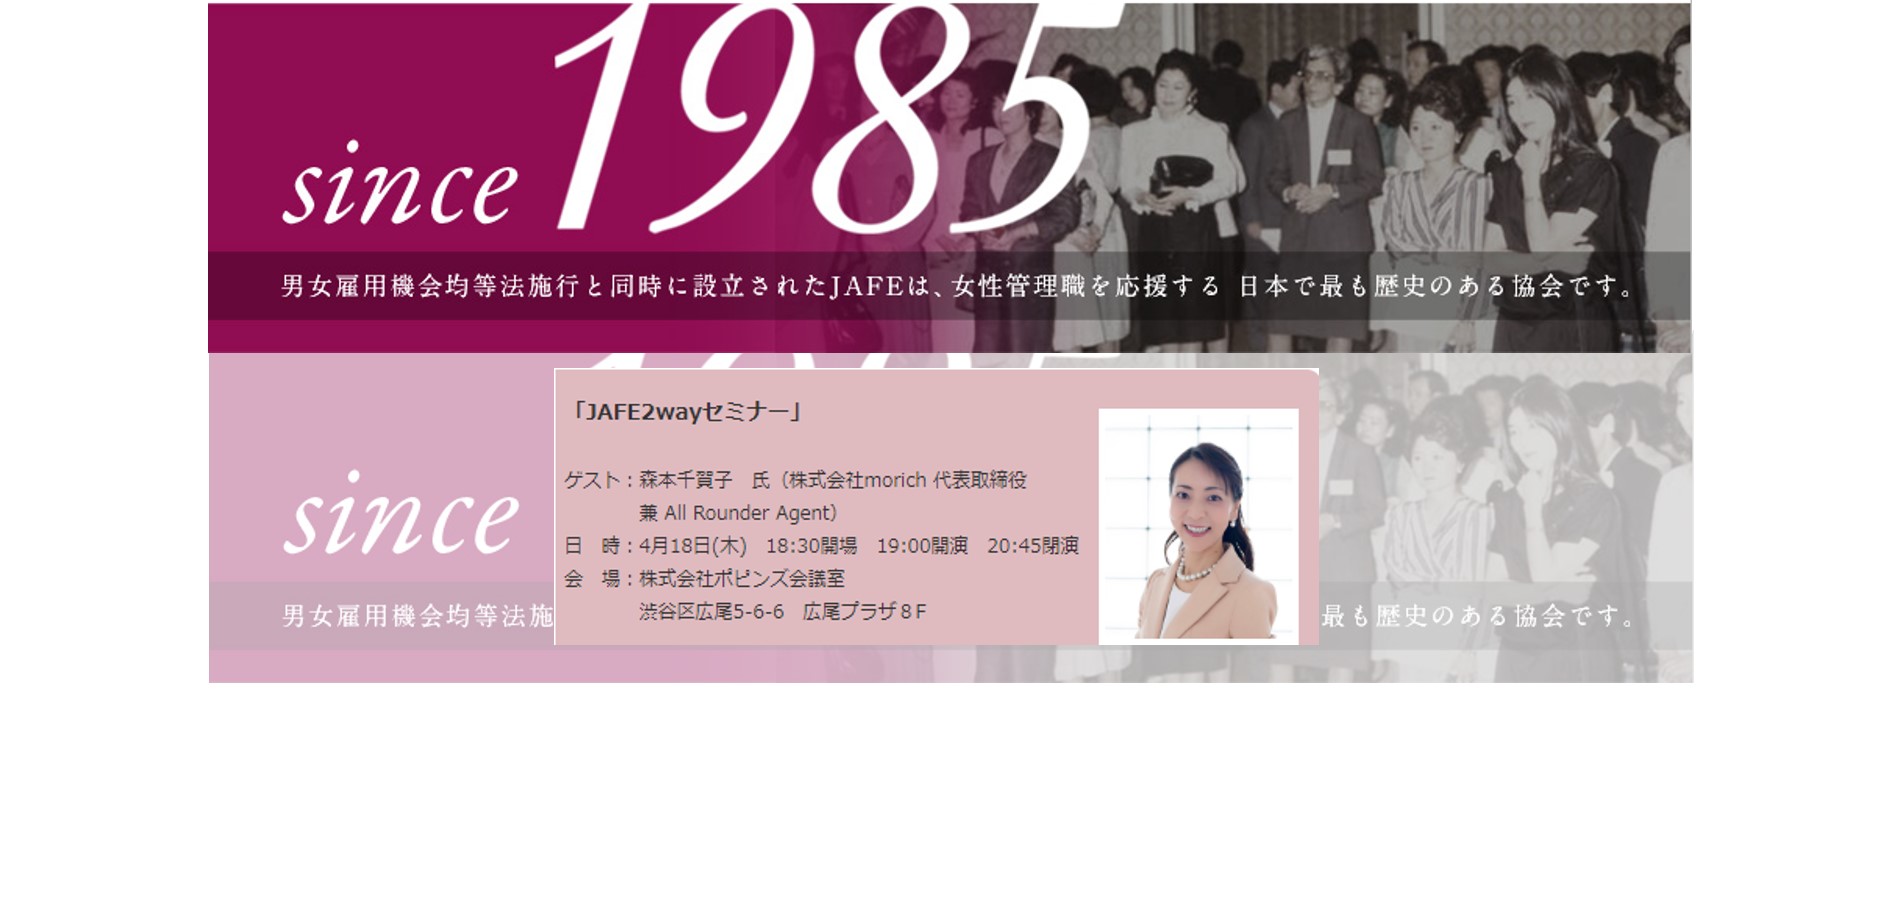 【2019.04.18】女性管理職のためのハッピーライフセミナー（日本女性エグゼクティブ協会主催）